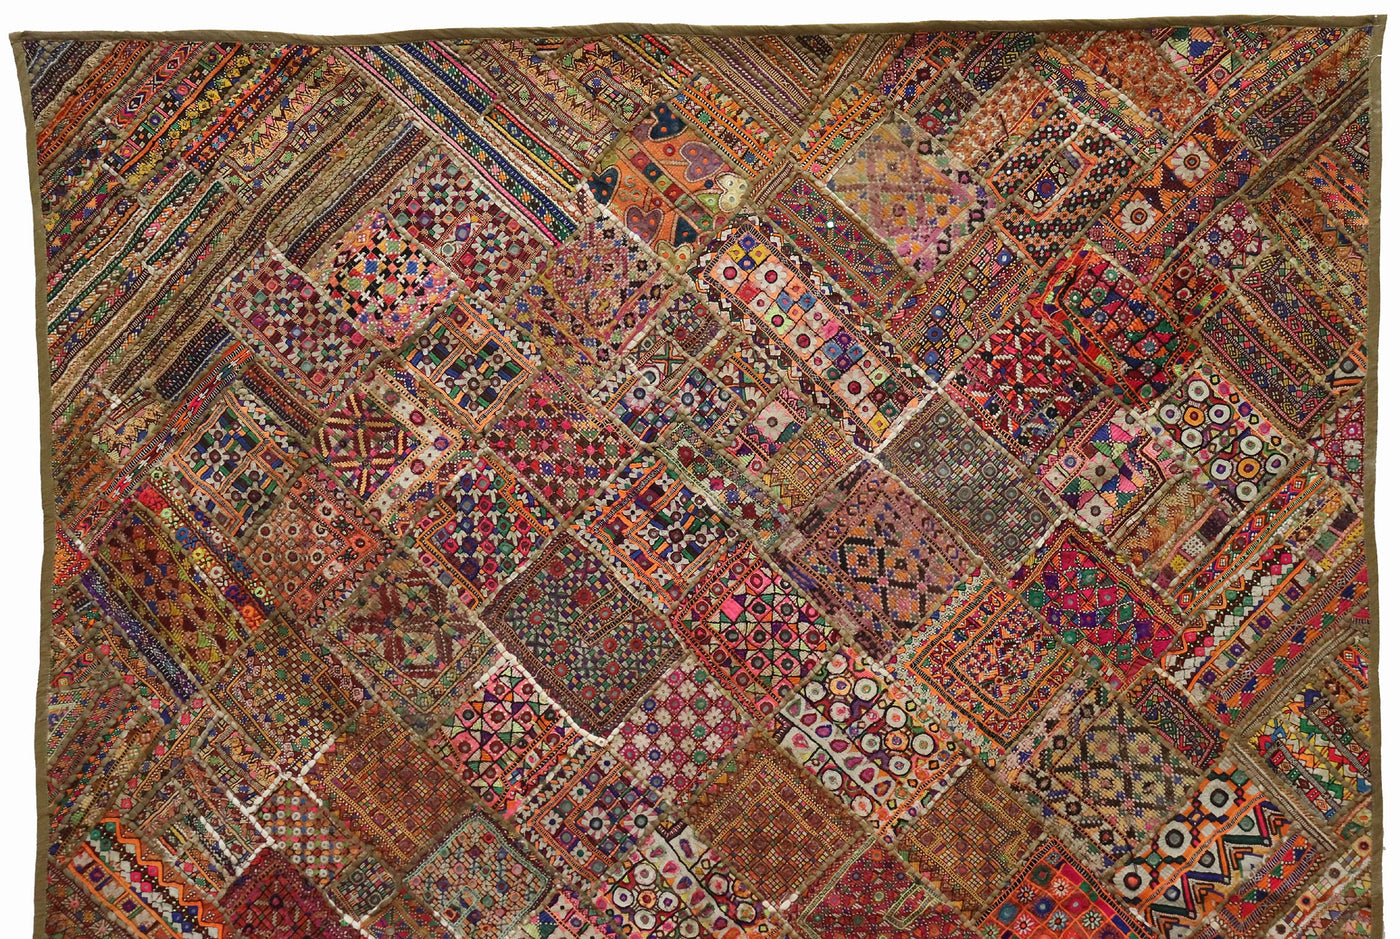 235x185 cm Vintage Bohemian orientalische Patchwork Wandbehang Wandteppich Teppich  Nr:22/1 Wandbehang Orientsbazar   